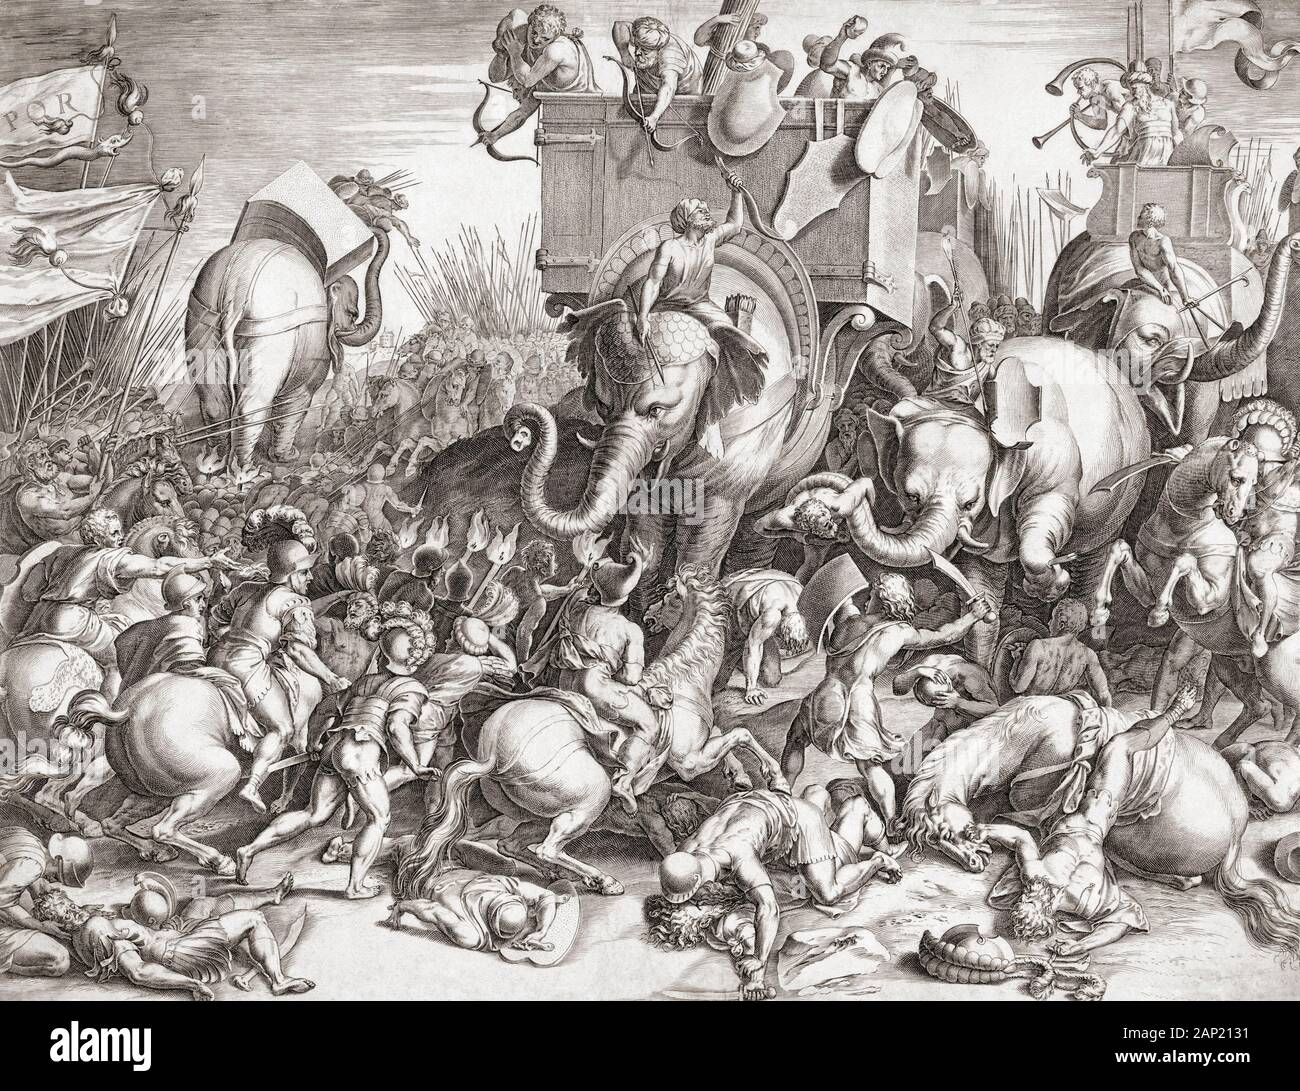 Die Schlacht von Zama 202 v. Chr.. Die Römer unter der Führung von Scipio besiegten die Karthager von Hannibal Barca während des Zweiten Punischen Krieges geführt. In diesem 16. Jahrhundert Gravur Hannibals Kriegselefanten Angriff der Römischen Kavallerie. Stockfoto